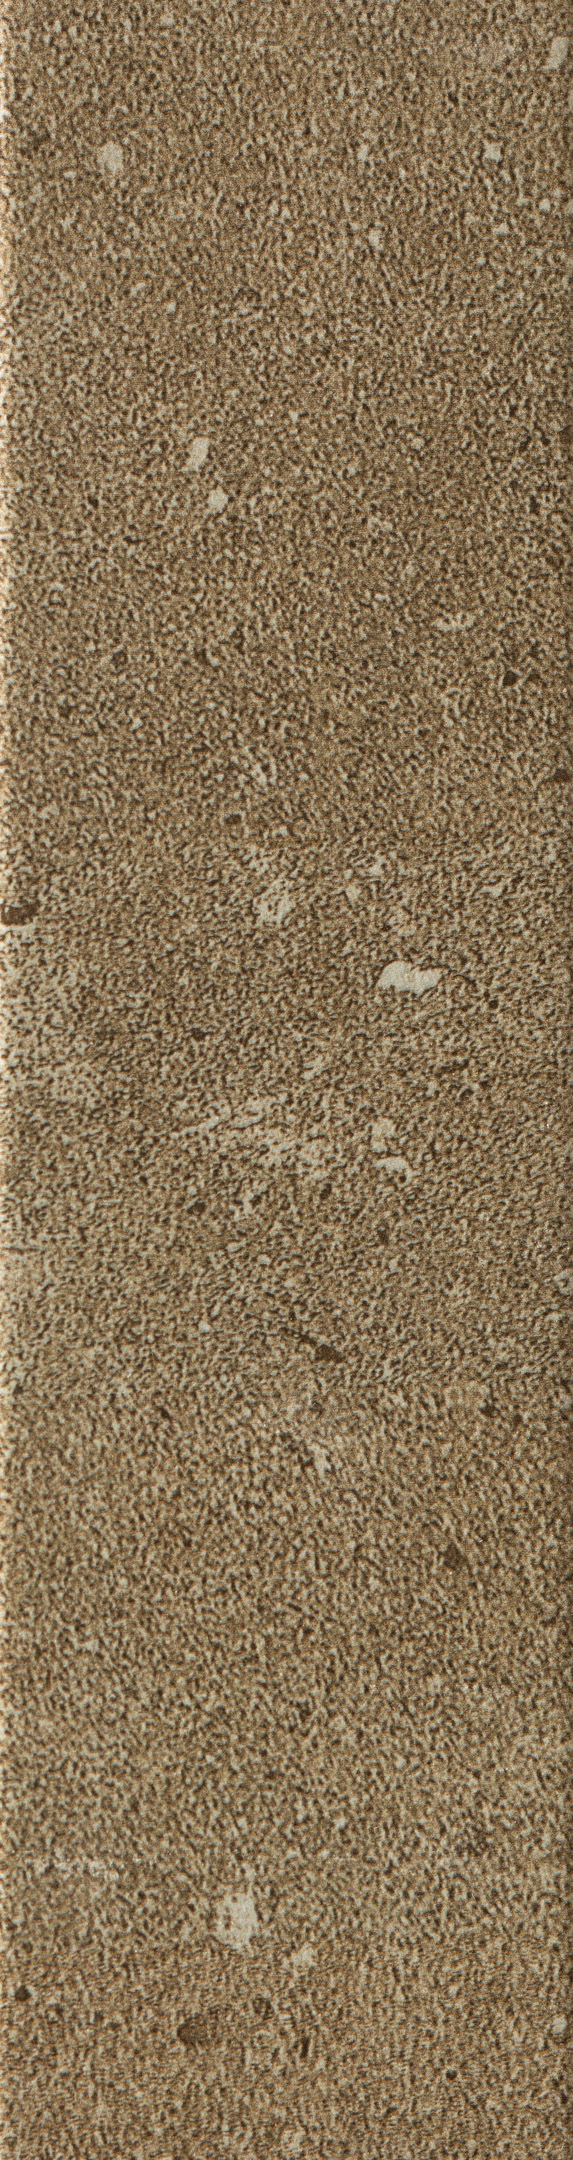 фото Клинкерная плитка керамин юта 3 бежевая 245х65х7 мм (34 шт.=0,54 кв.м)